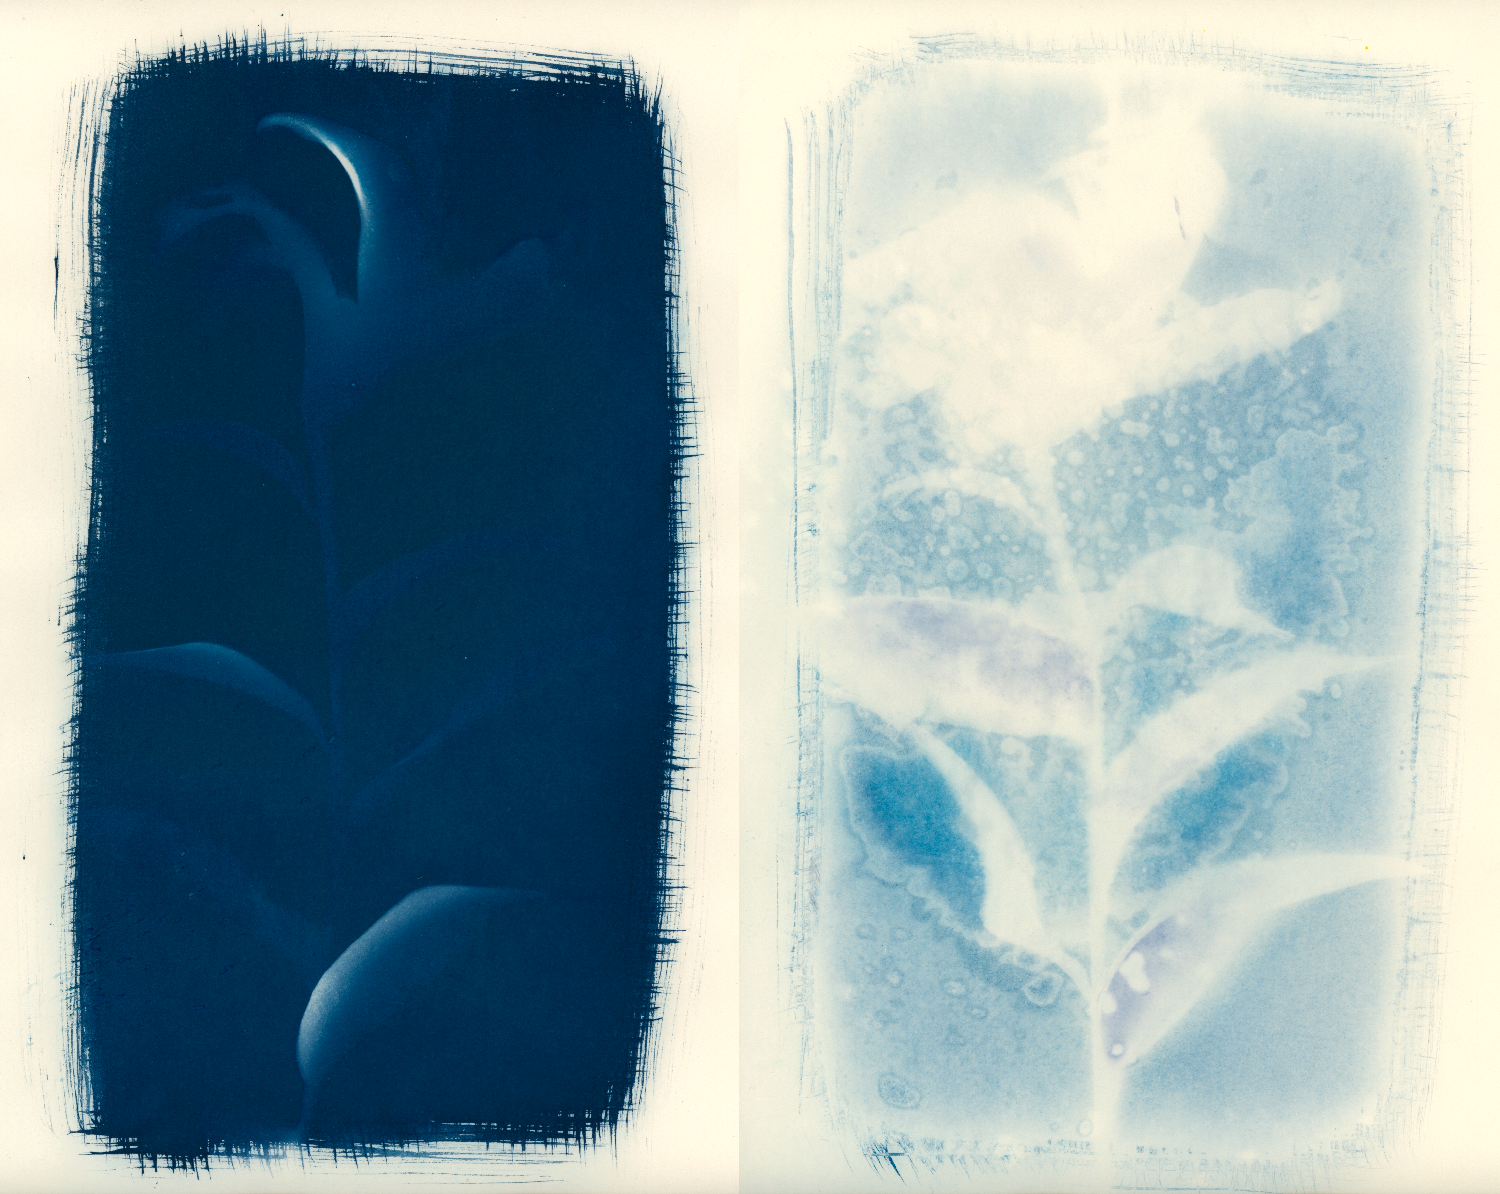 25/31: cyanotypes on weston